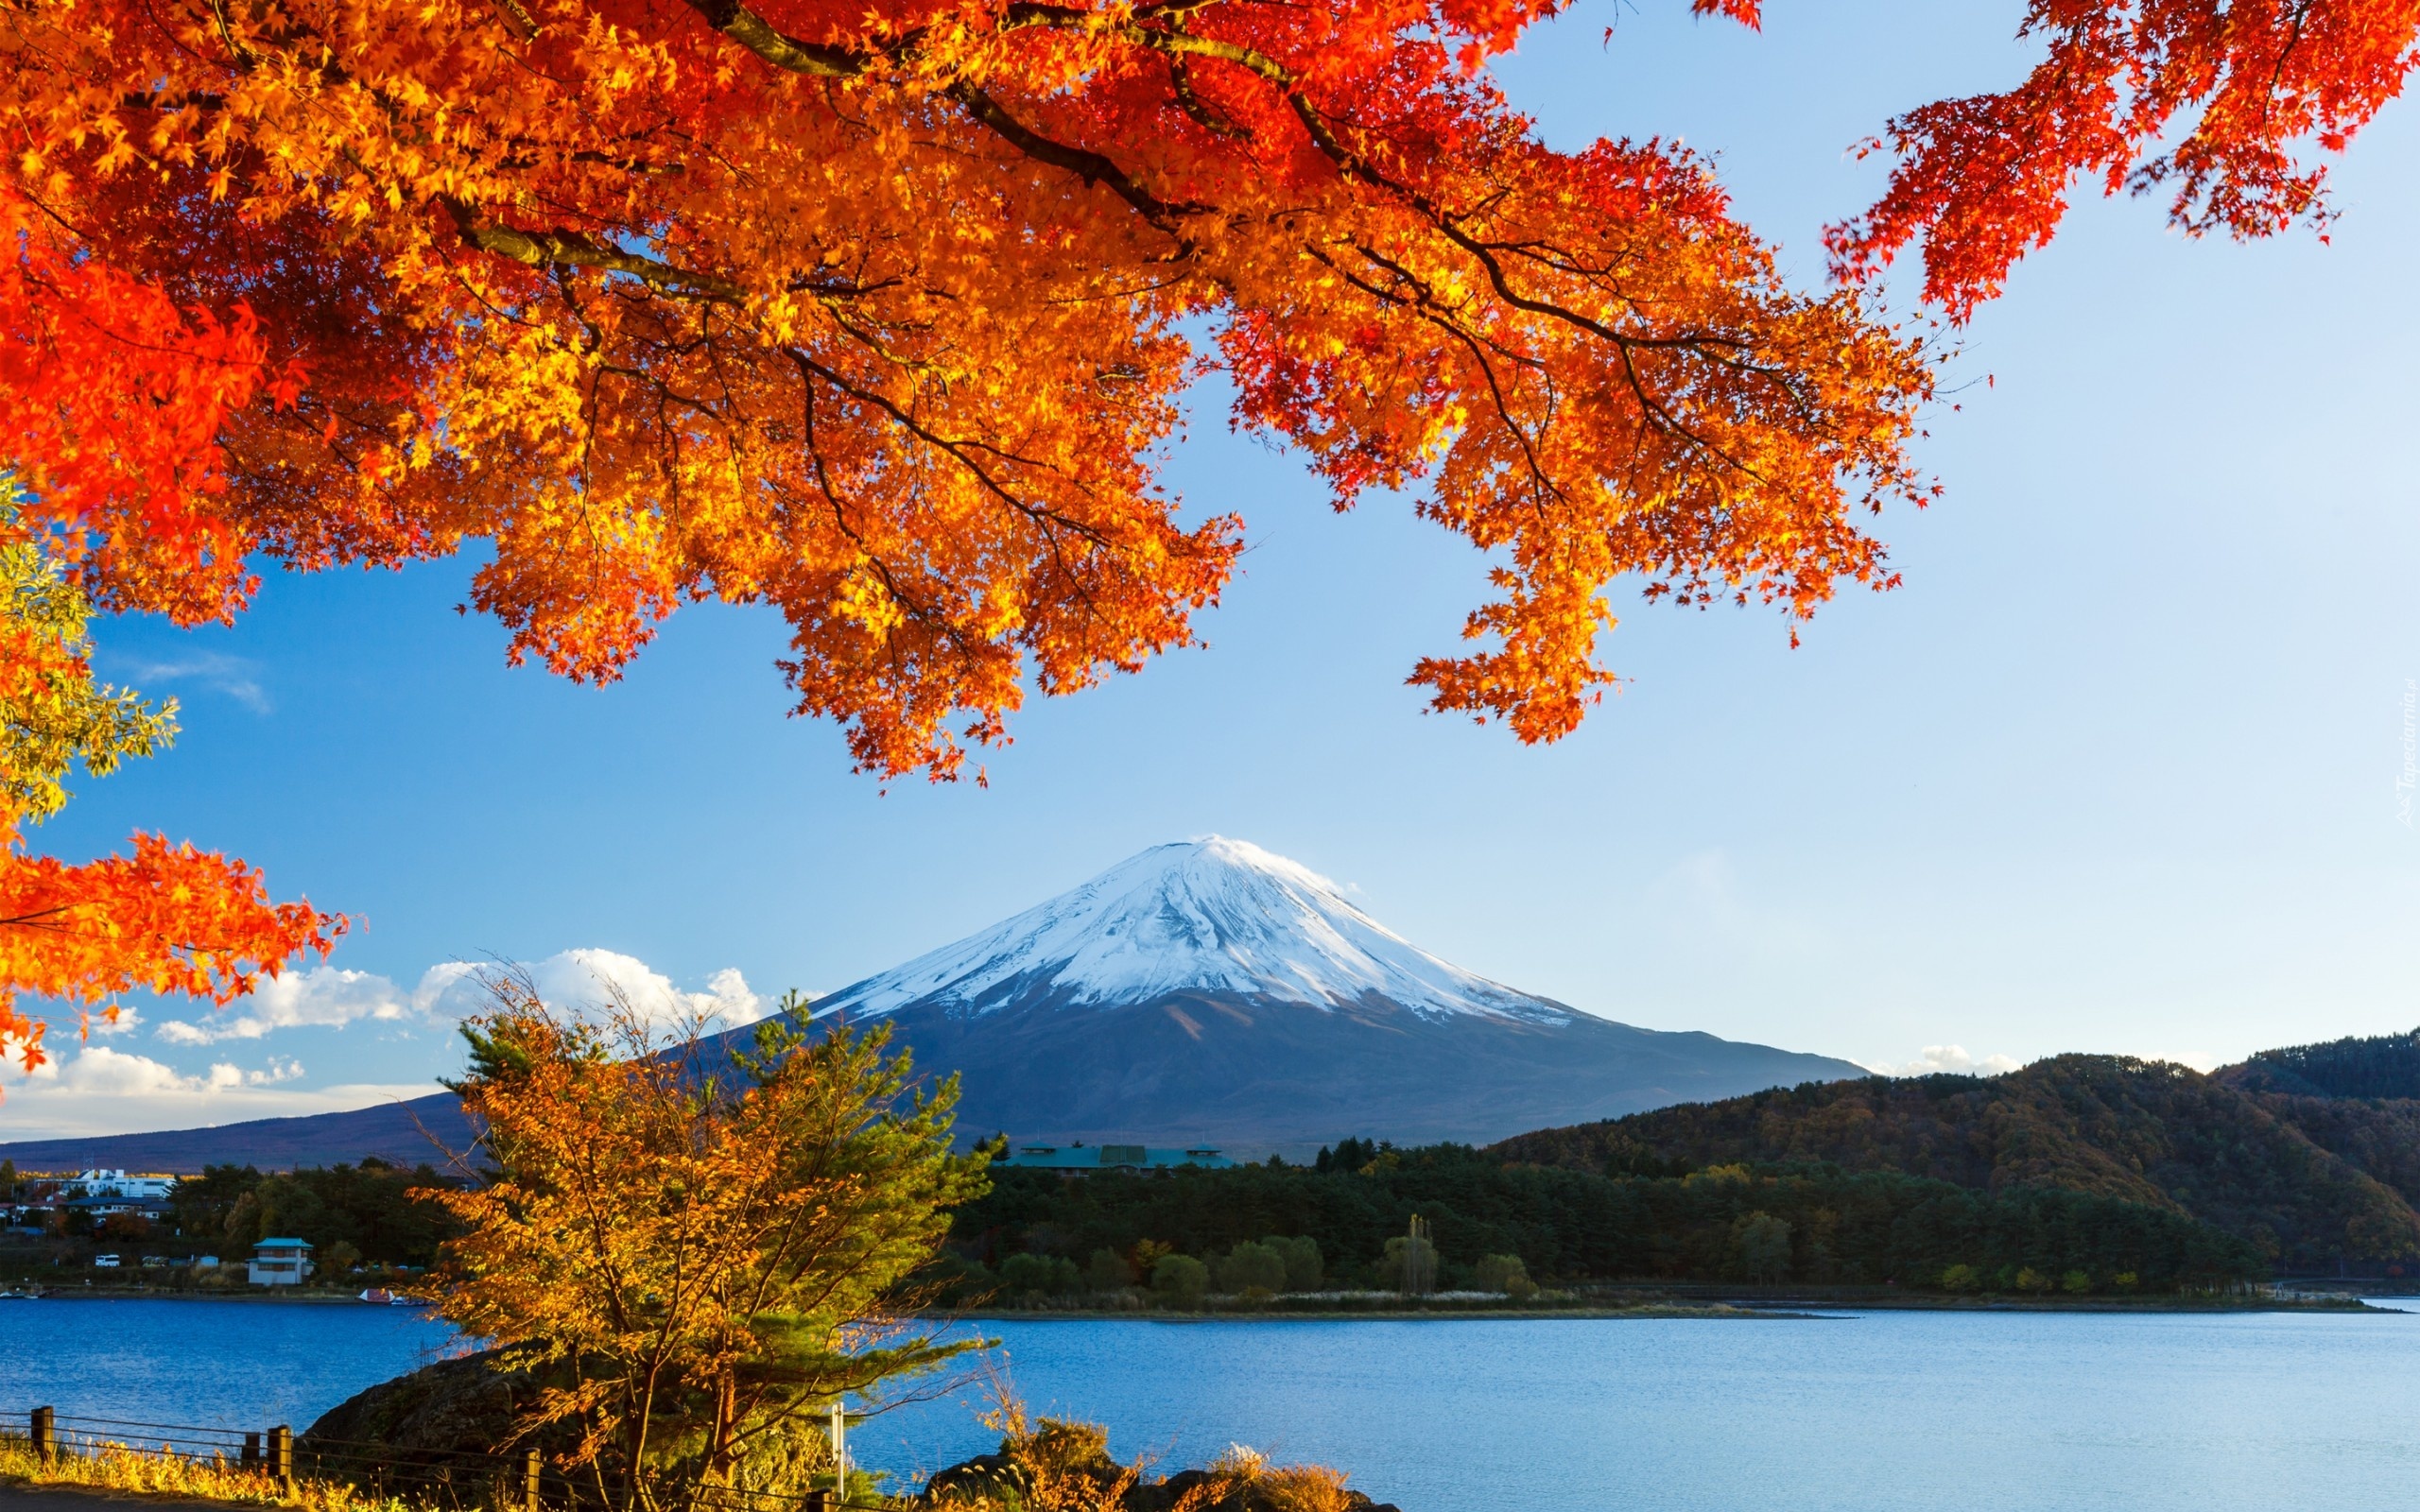 Fudżi, Jezioro, Lasy, Drzewa, Japonia